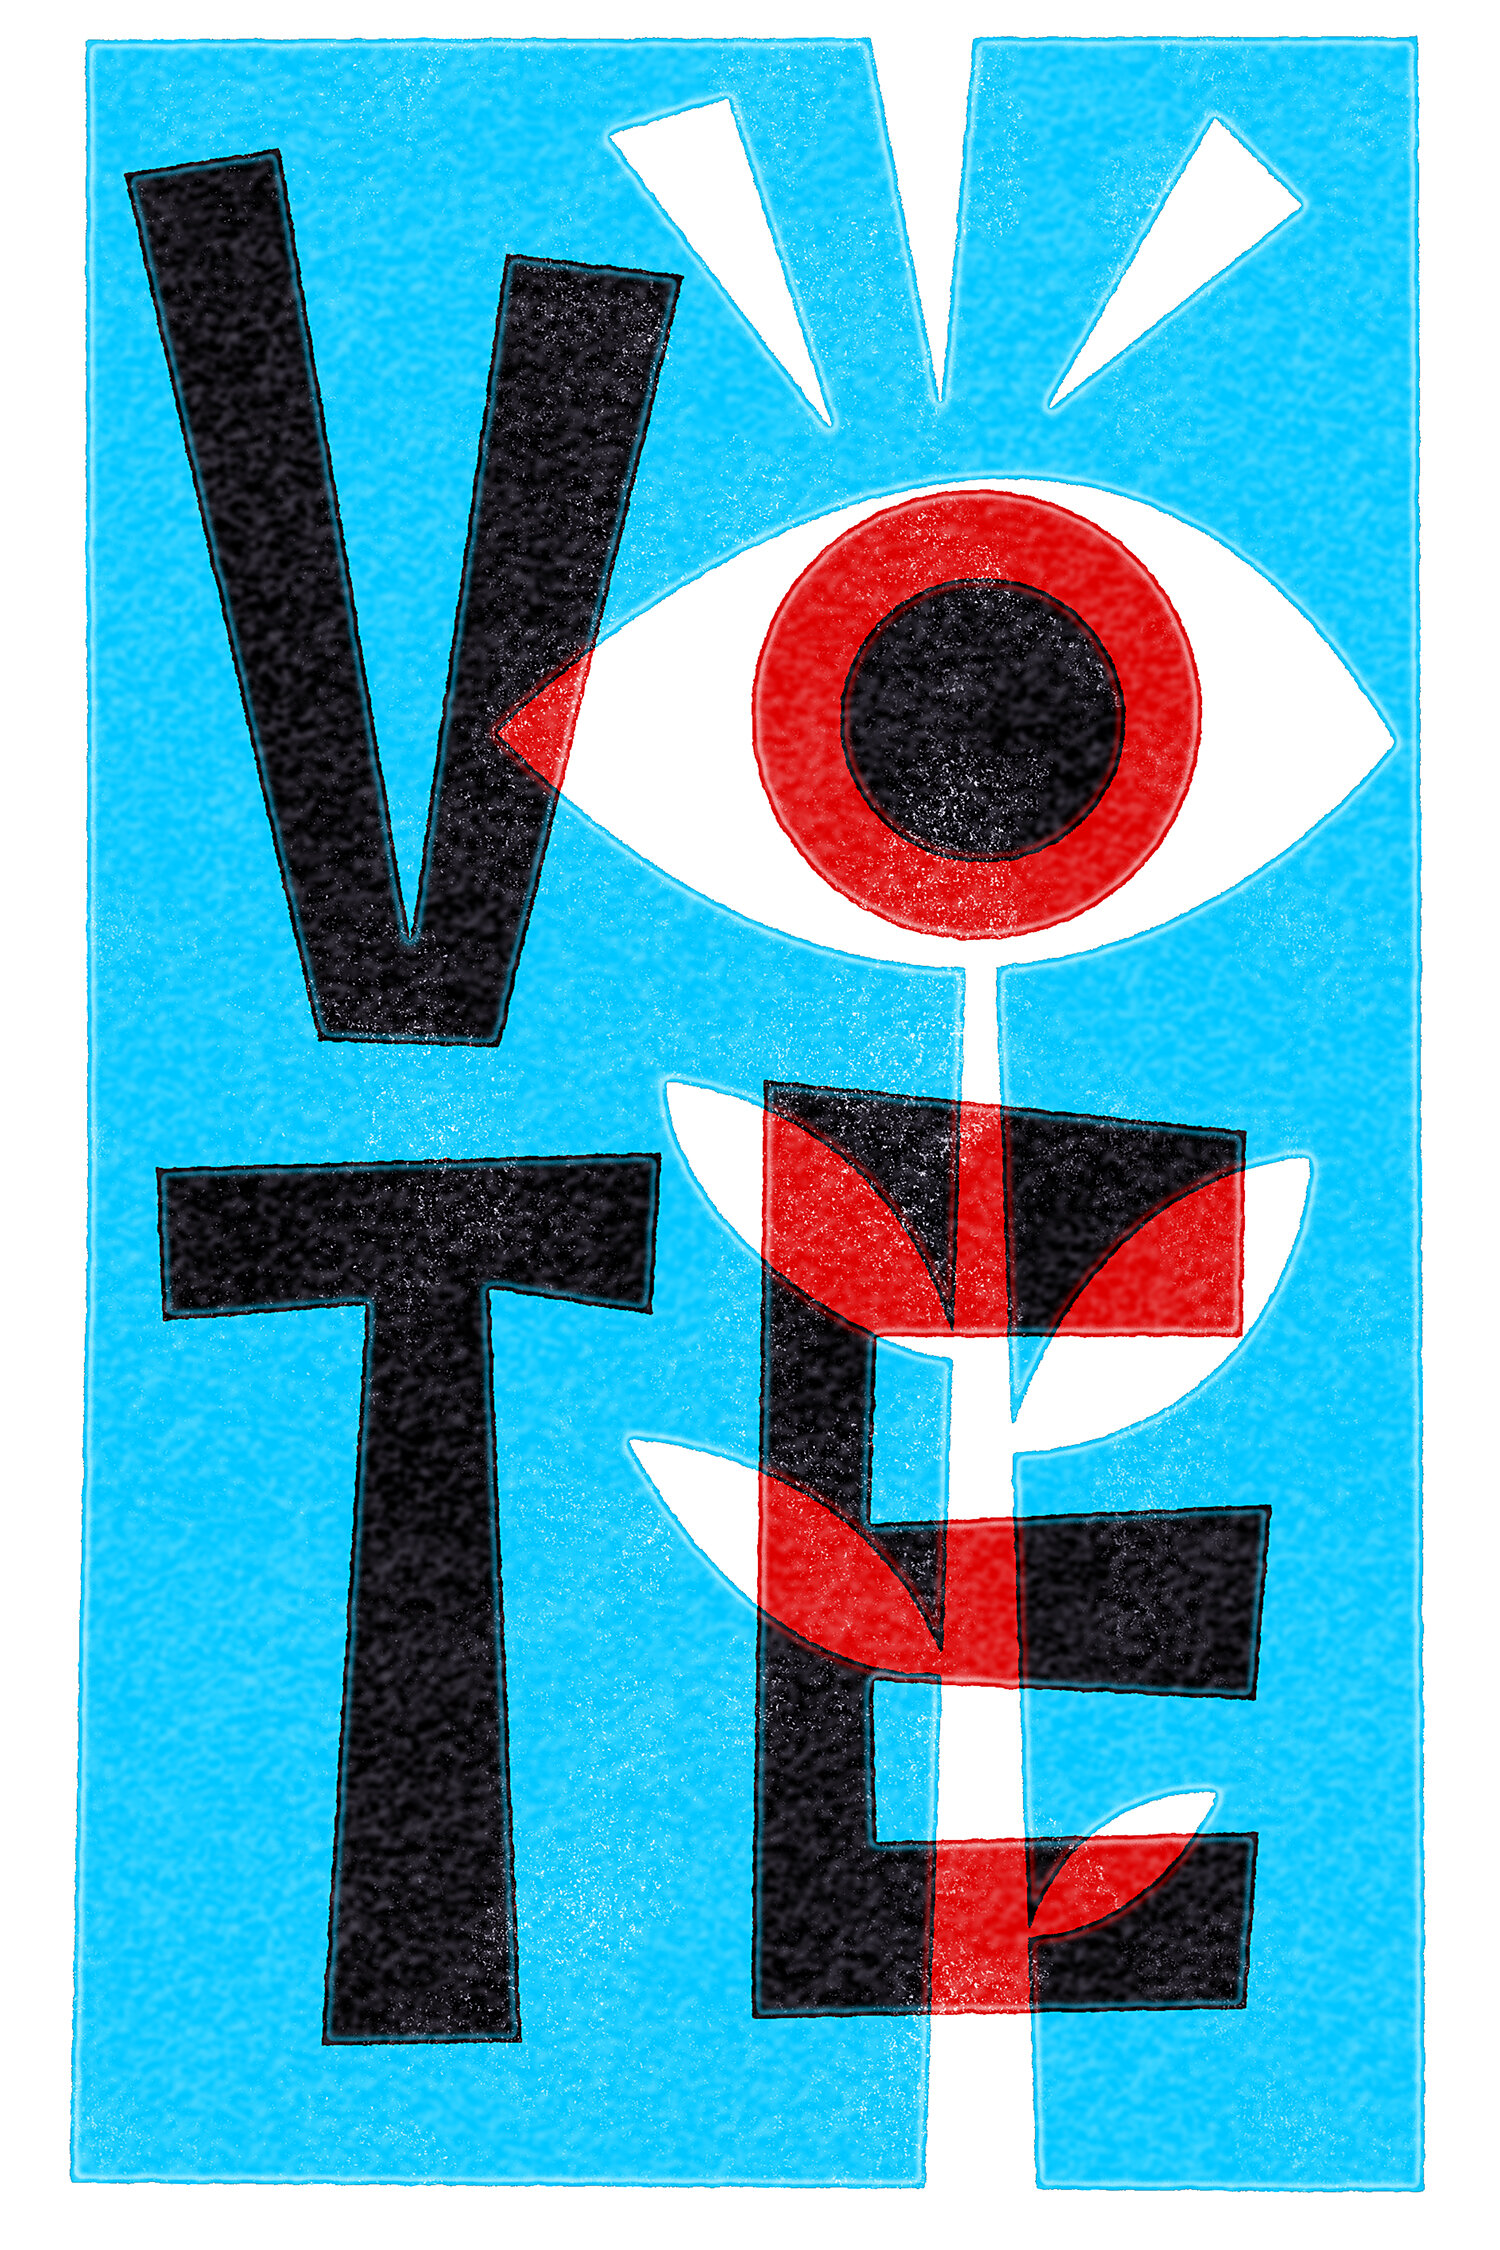 Eyeball Vote Stamp